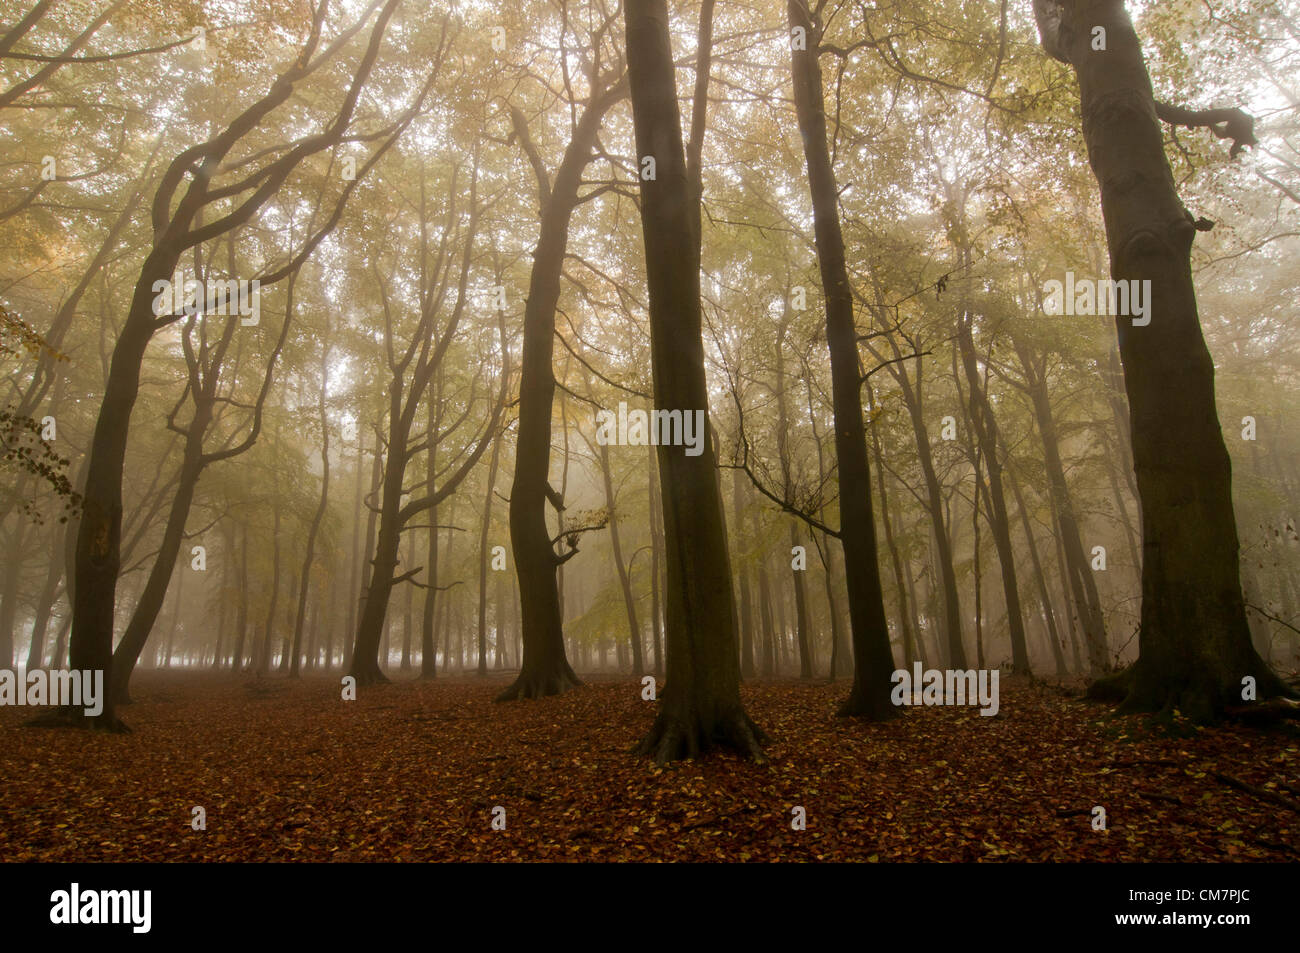 Dockey, Ashridge Estate Bois, Hertfordshire, Royaume-Uni, 23 octobre 2012. Un épais brouillard couvertures une grande partie de l'UK pour la deuxième journée consécutive, y compris ce bois de hêtre d'automne. Crédit photo Stephen Chung Banque D'Images